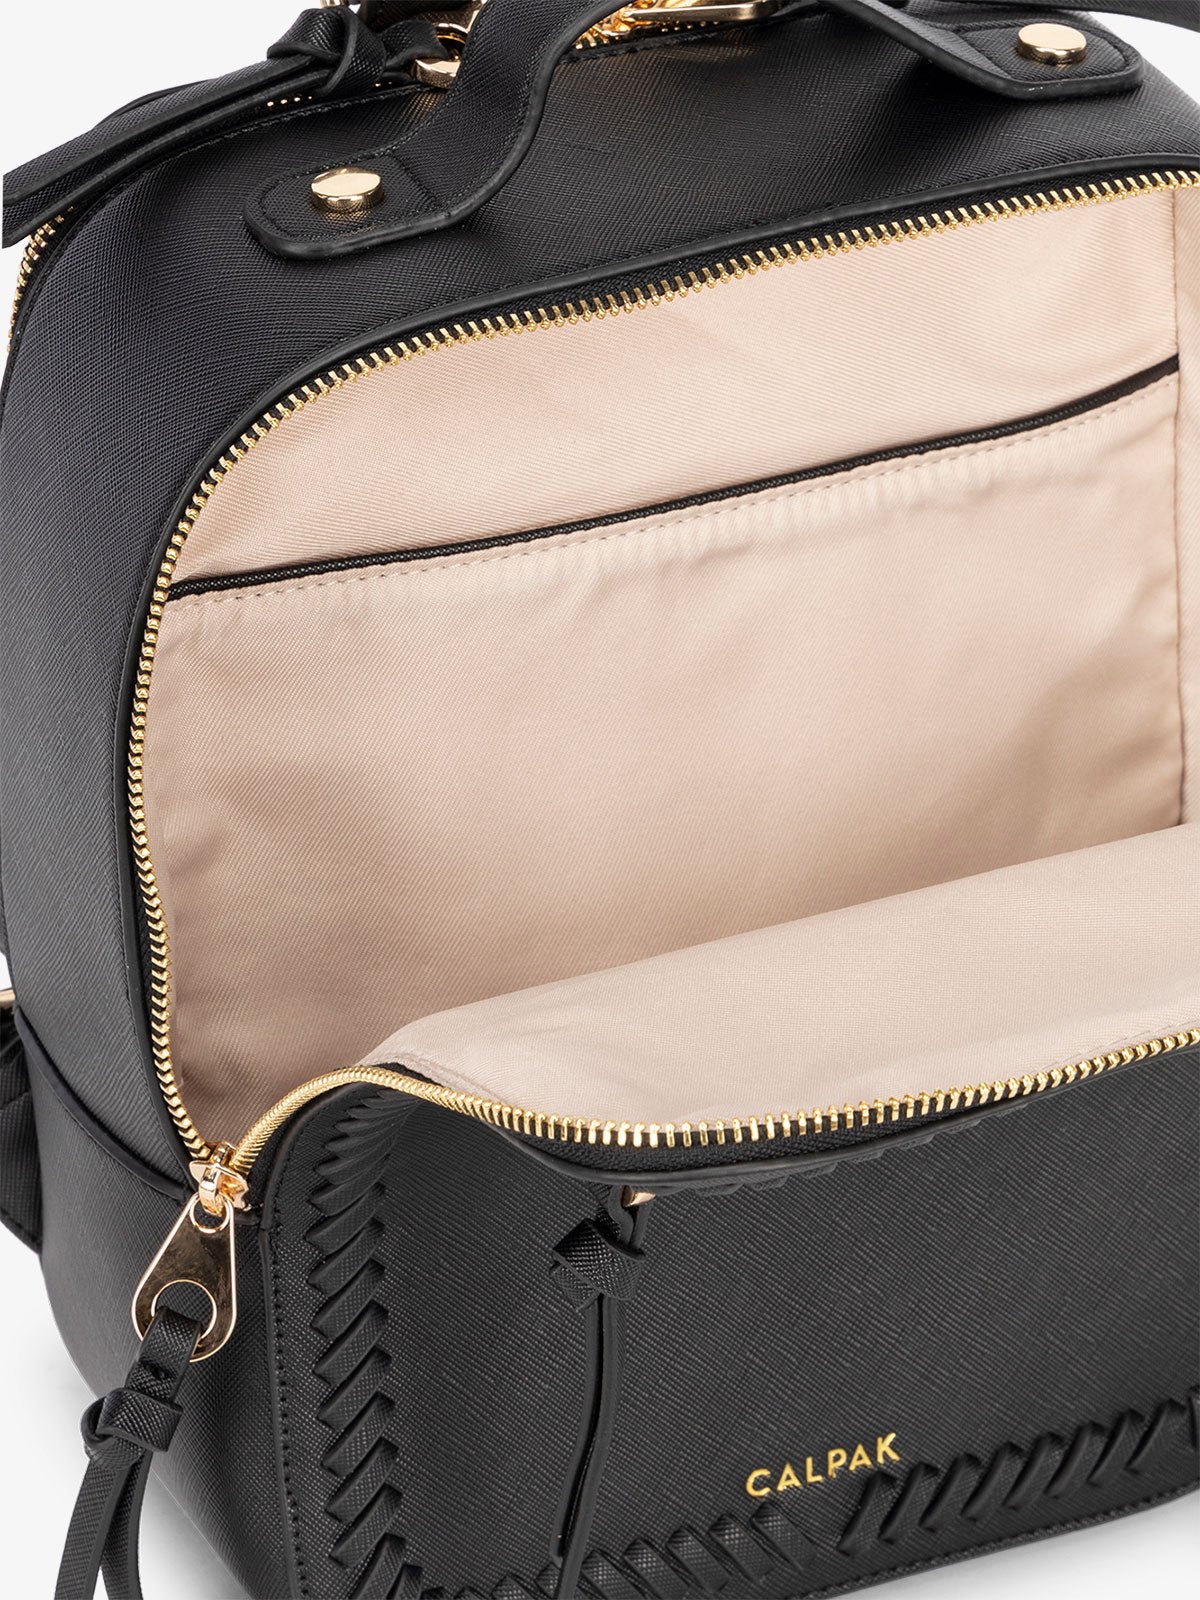 Black mini backpack interior in black